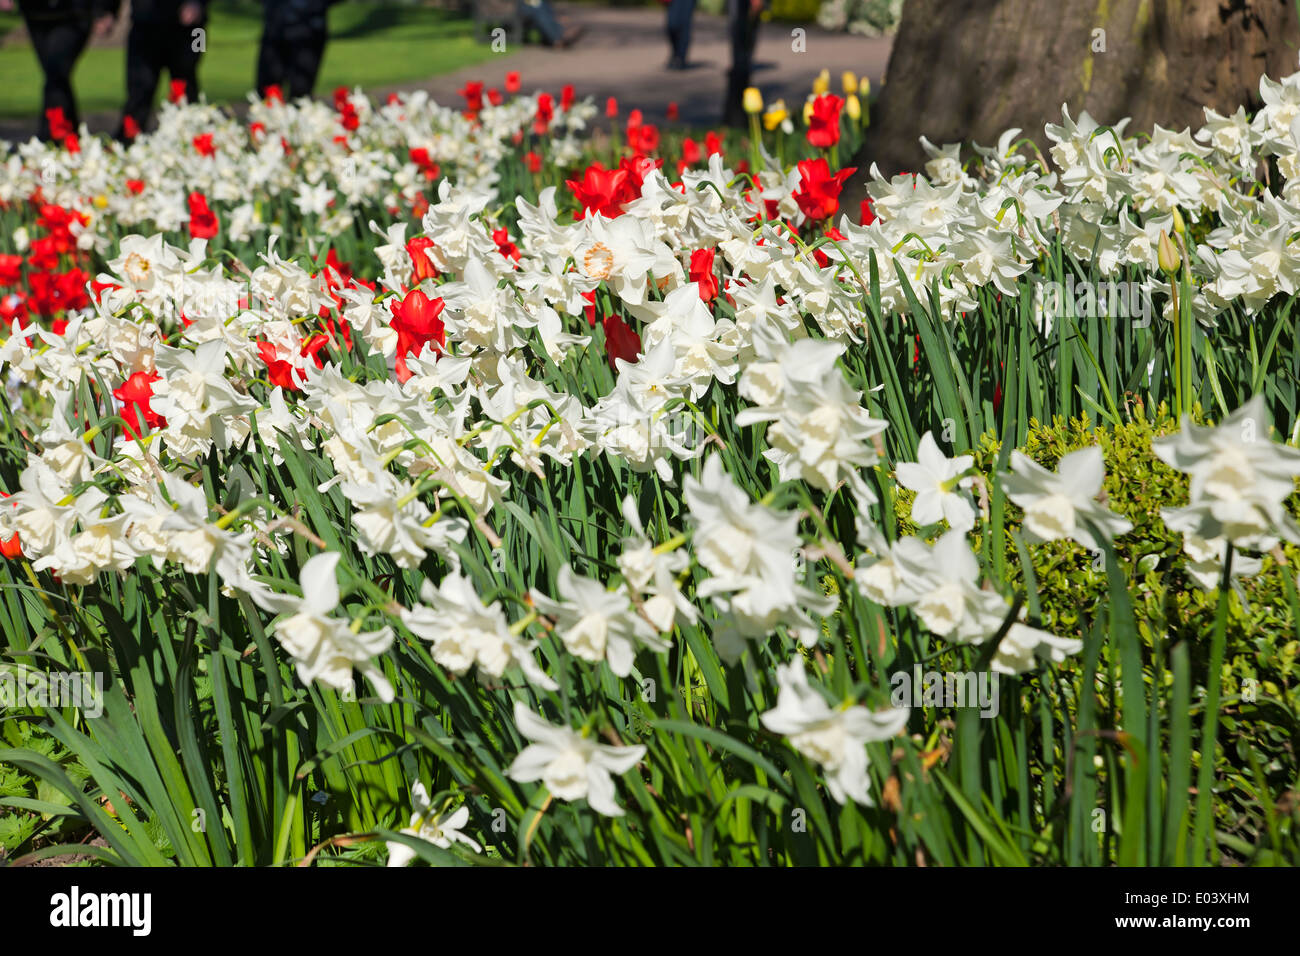 Bianco narcisi narcissus fiori fioritura e tulipani rossi tulipano in misto confine primavera giardino Inghilterra Regno Unito Foto Stock